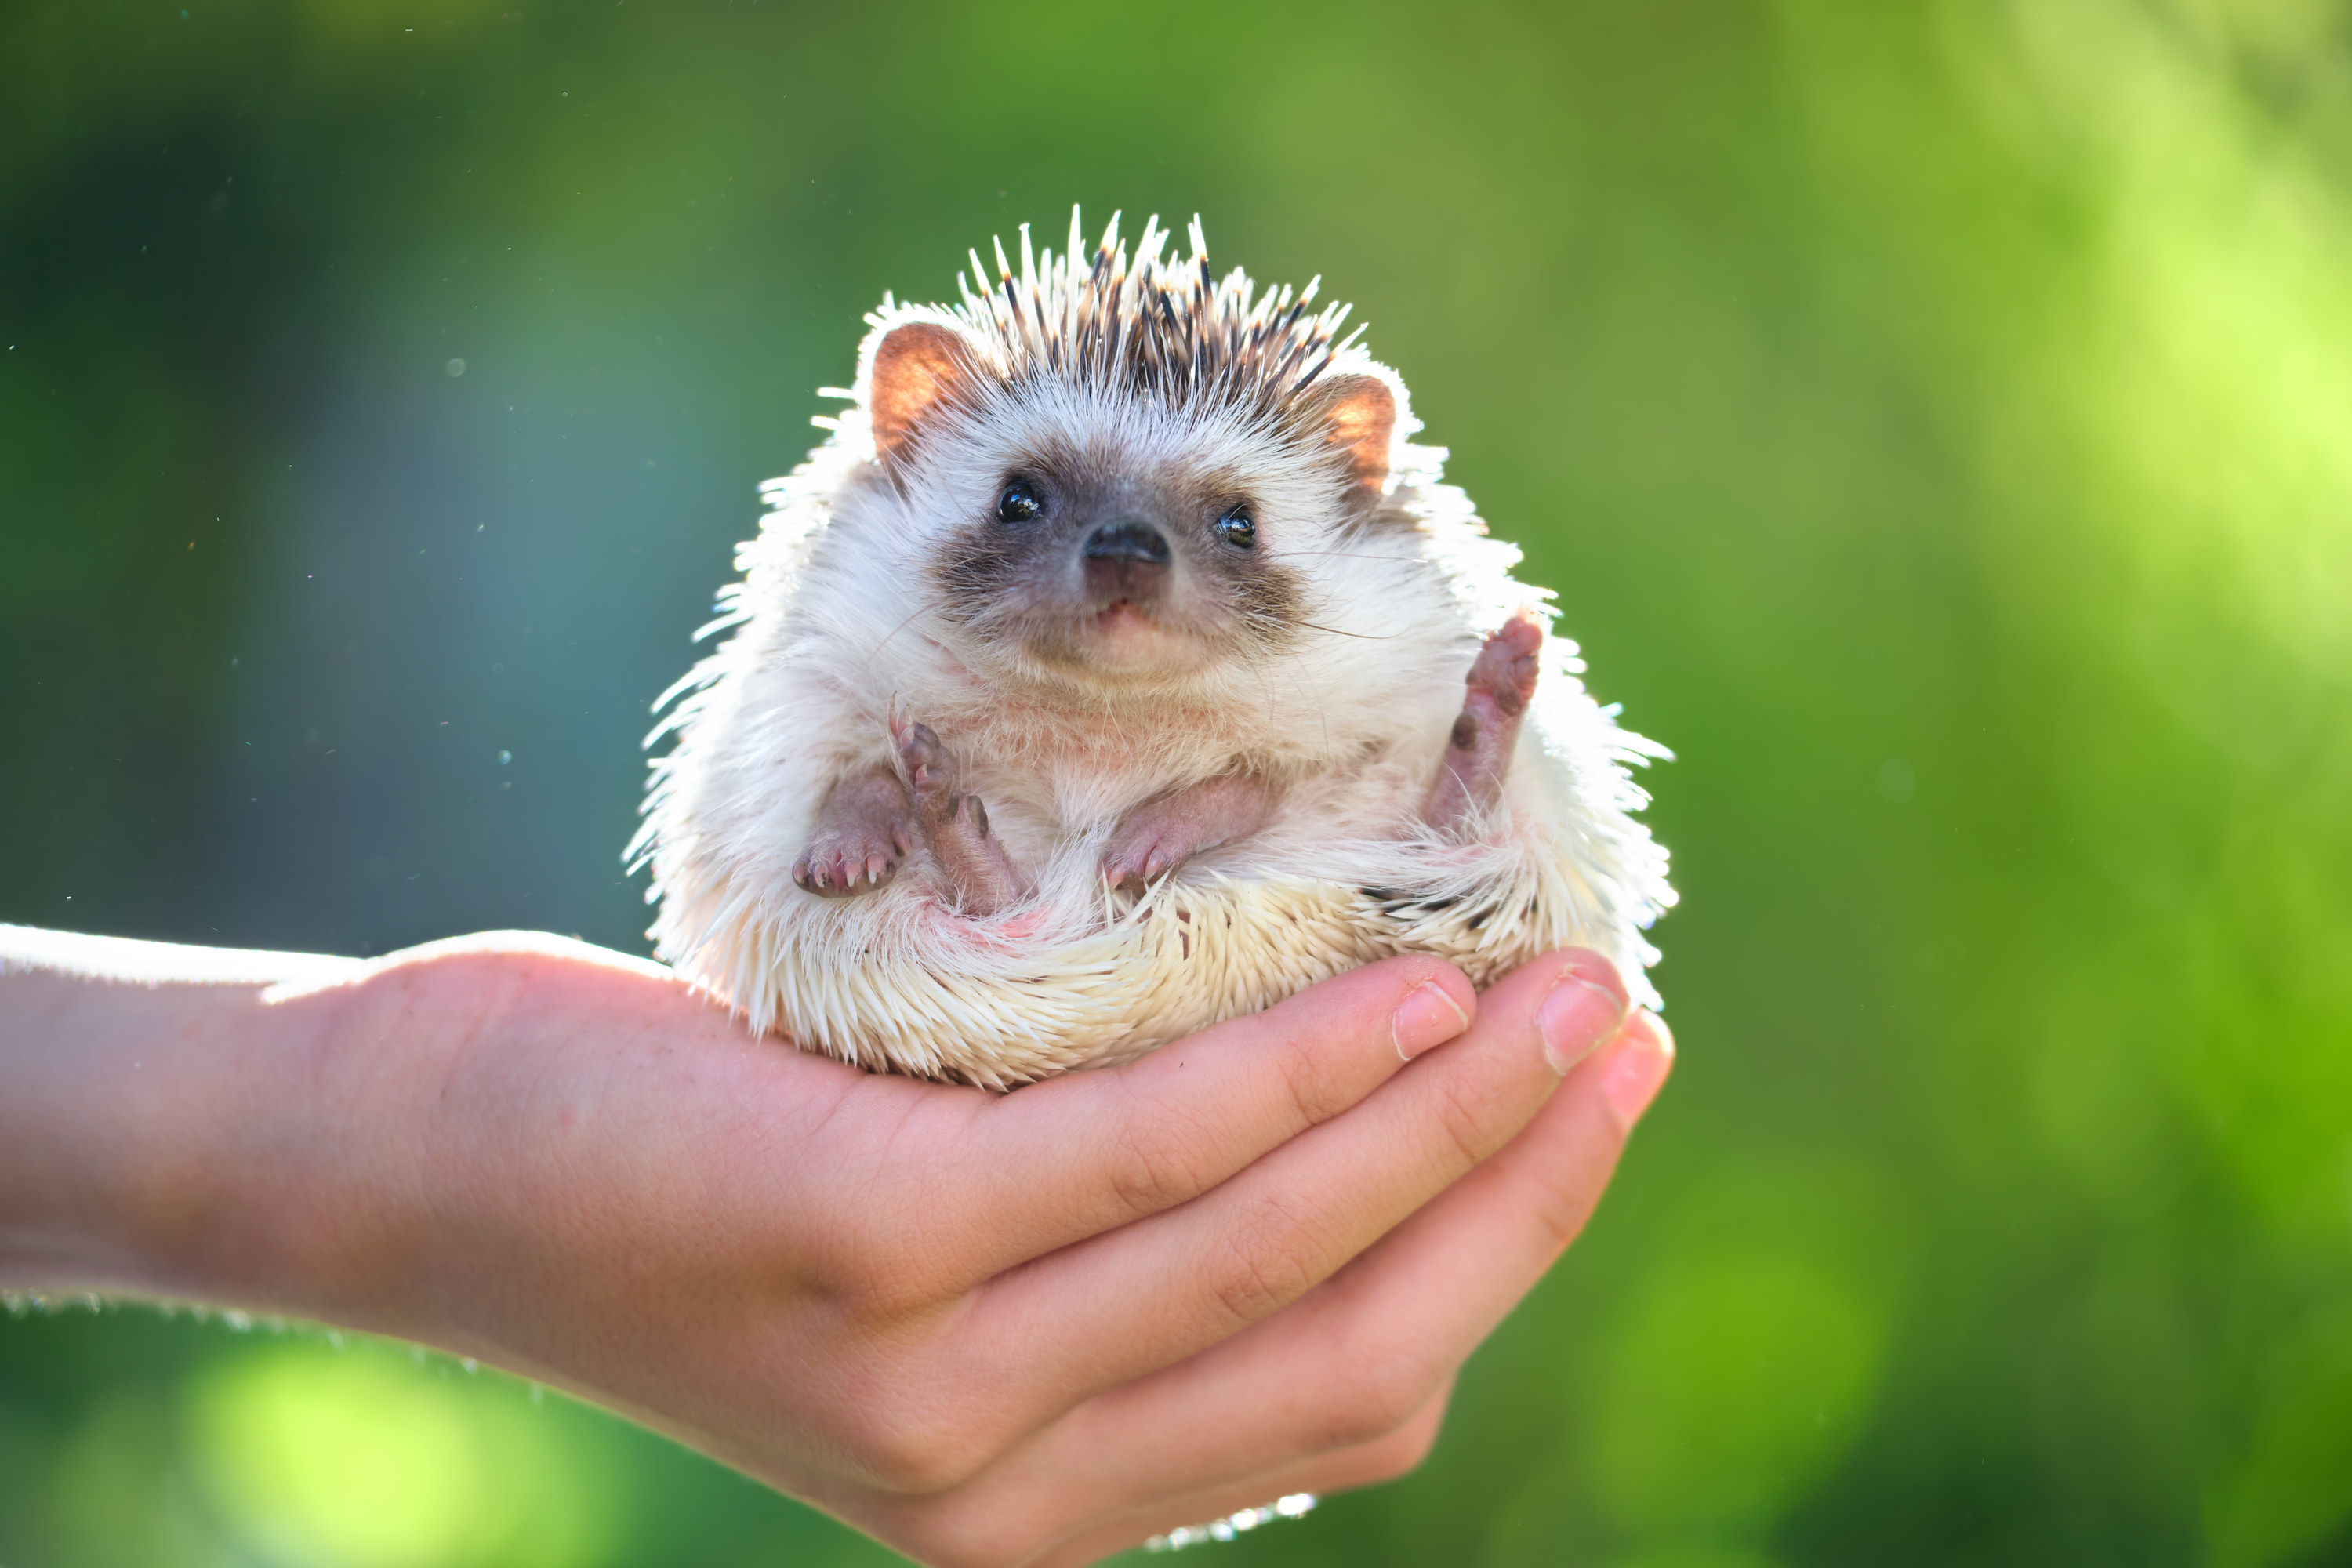 a hedgehog lifting its legs